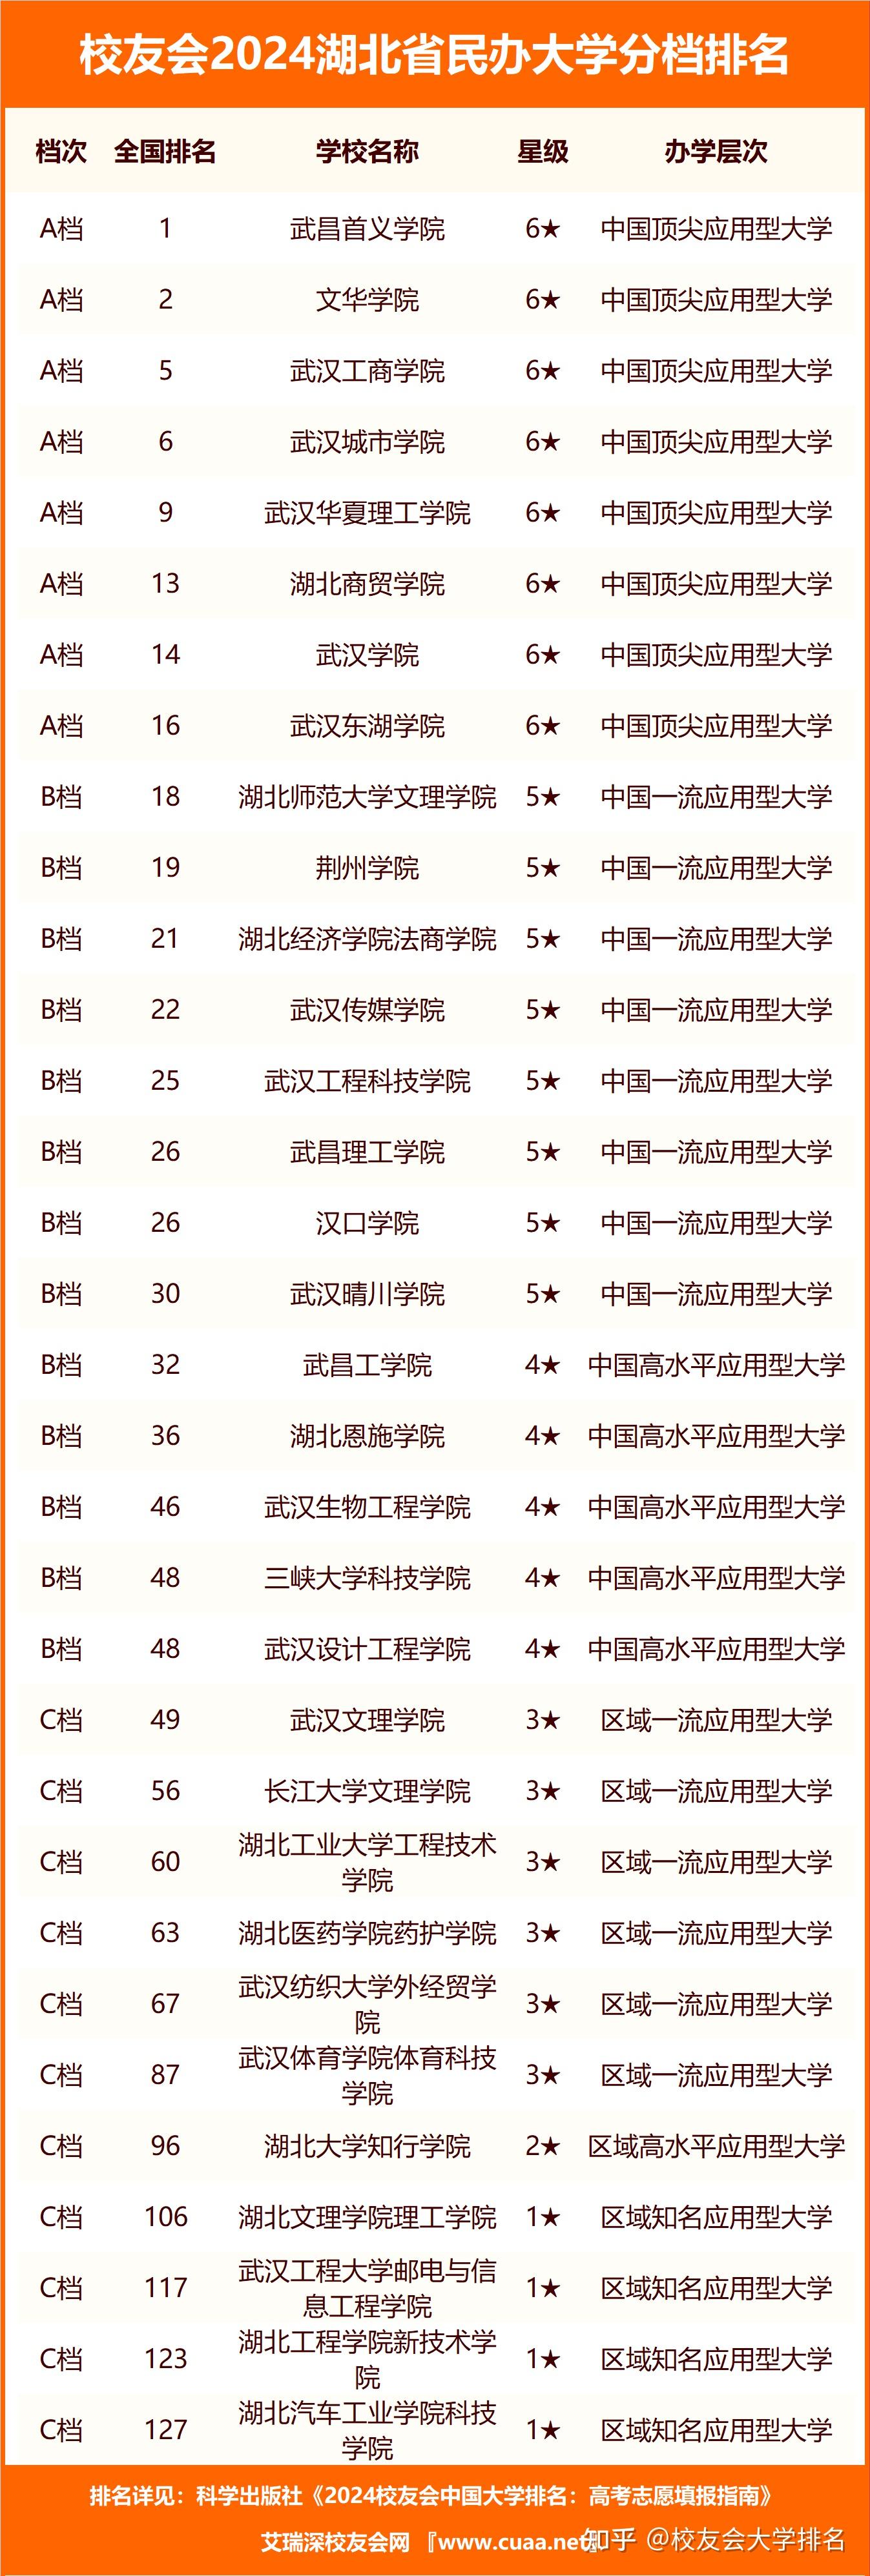 校友会2024湖北省高职院校分档排名 ,武汉职业技术学院居最高档